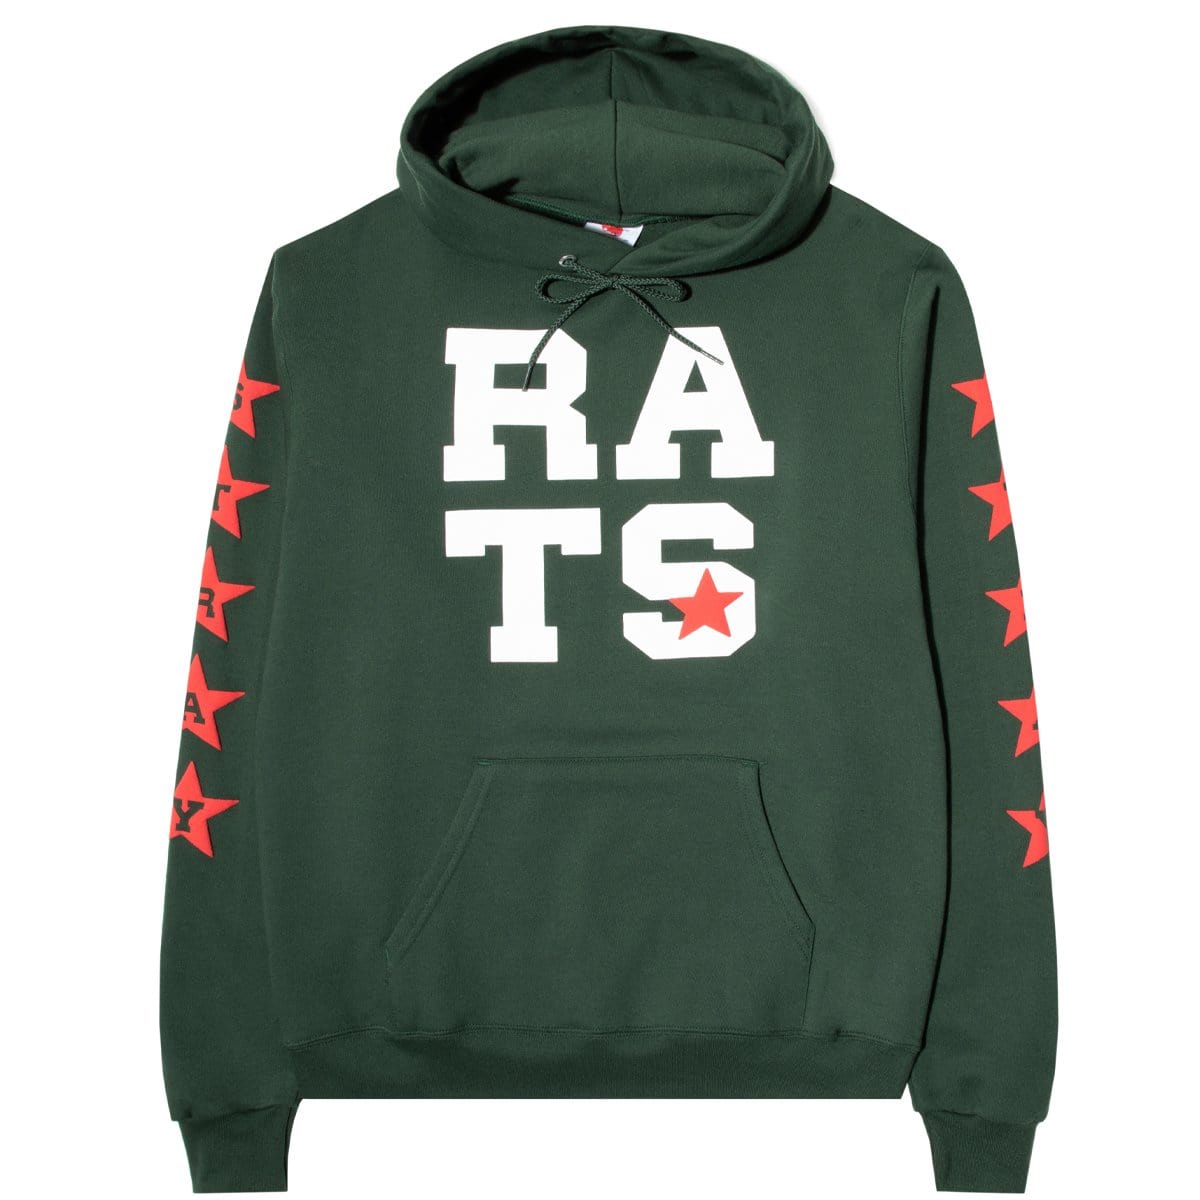 Stray Rats Hoodies & Sweatshirts RATS STAR HOODED SWEATSHIRT